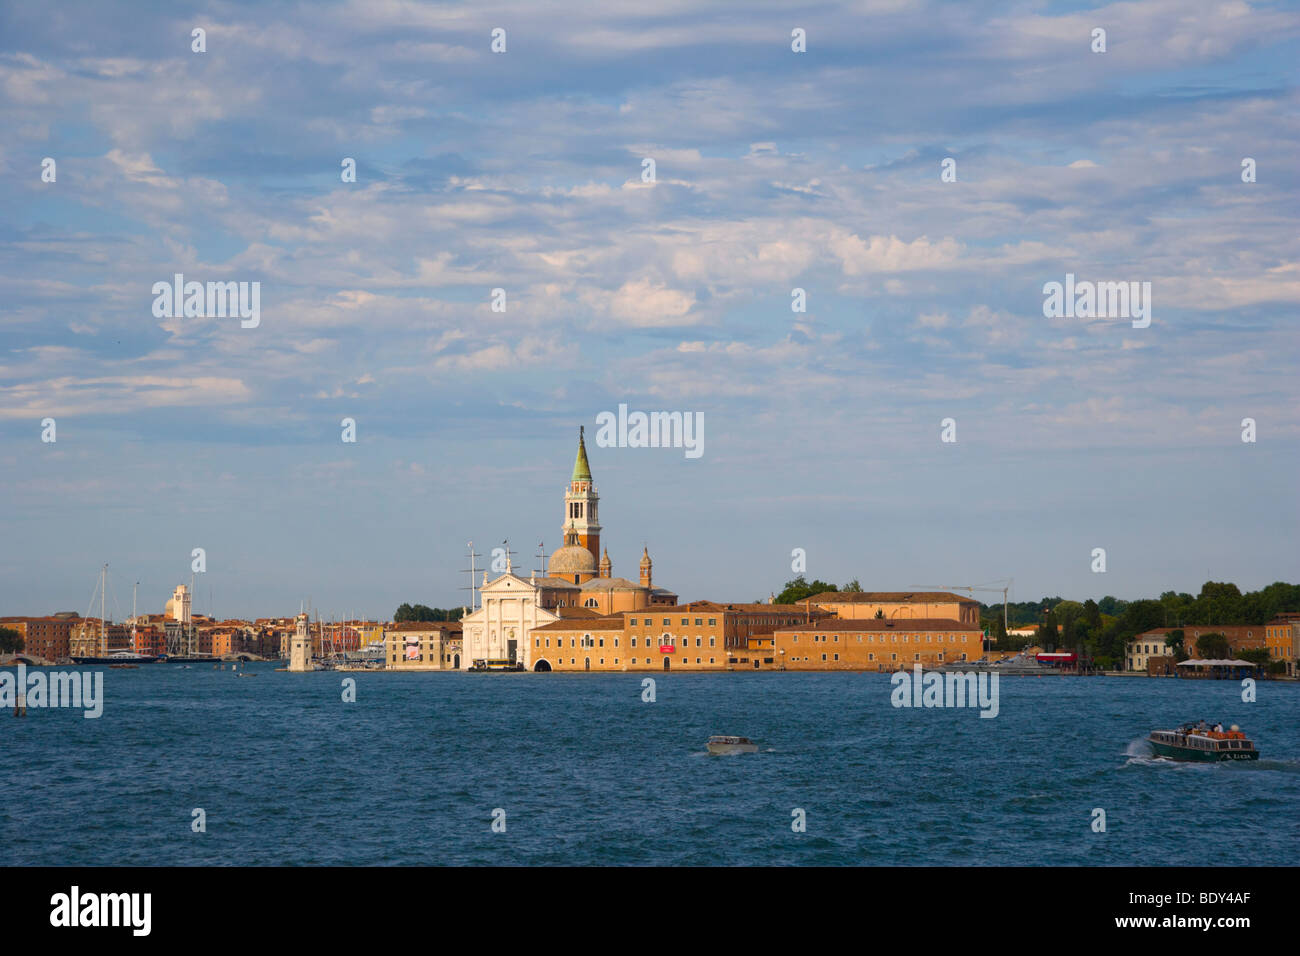 View of the Church of San Giorgio Maggiore from Canale della Giudecca, Venice, Italy, Europe Stock Photo